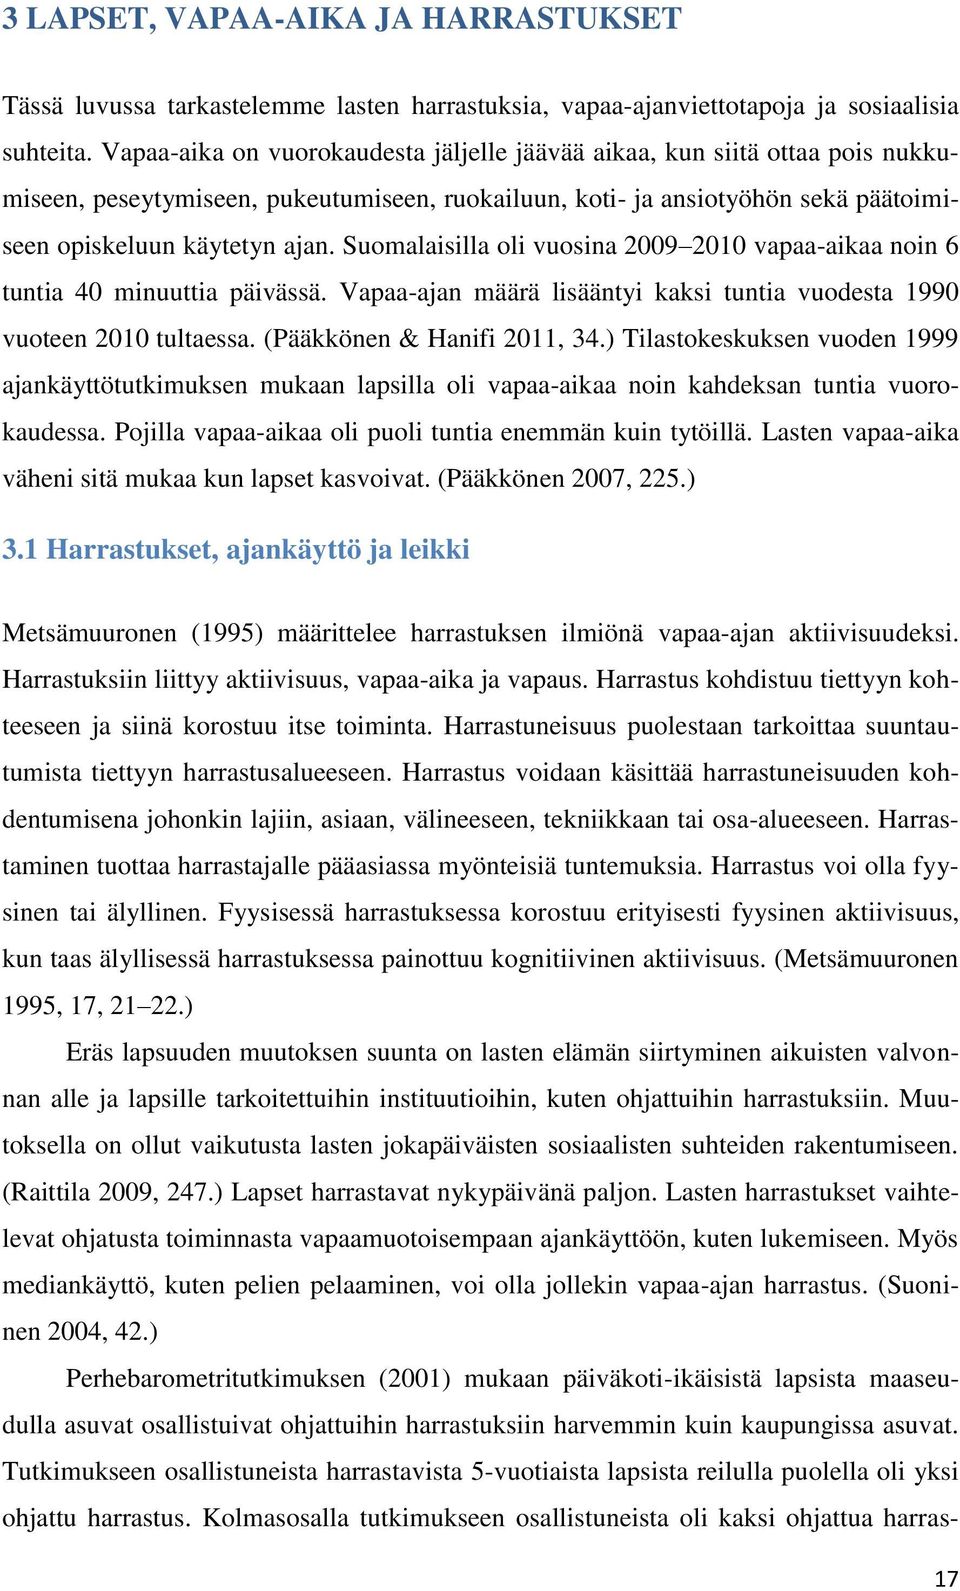 Suomalaisilla oli vuosina 2009 2010 vapaa-aikaa noin 6 tuntia 40 minuuttia päivässä. Vapaa-ajan määrä lisääntyi kaksi tuntia vuodesta 1990 vuoteen 2010 tultaessa. (Pääkkönen & Hanifi 2011, 34.